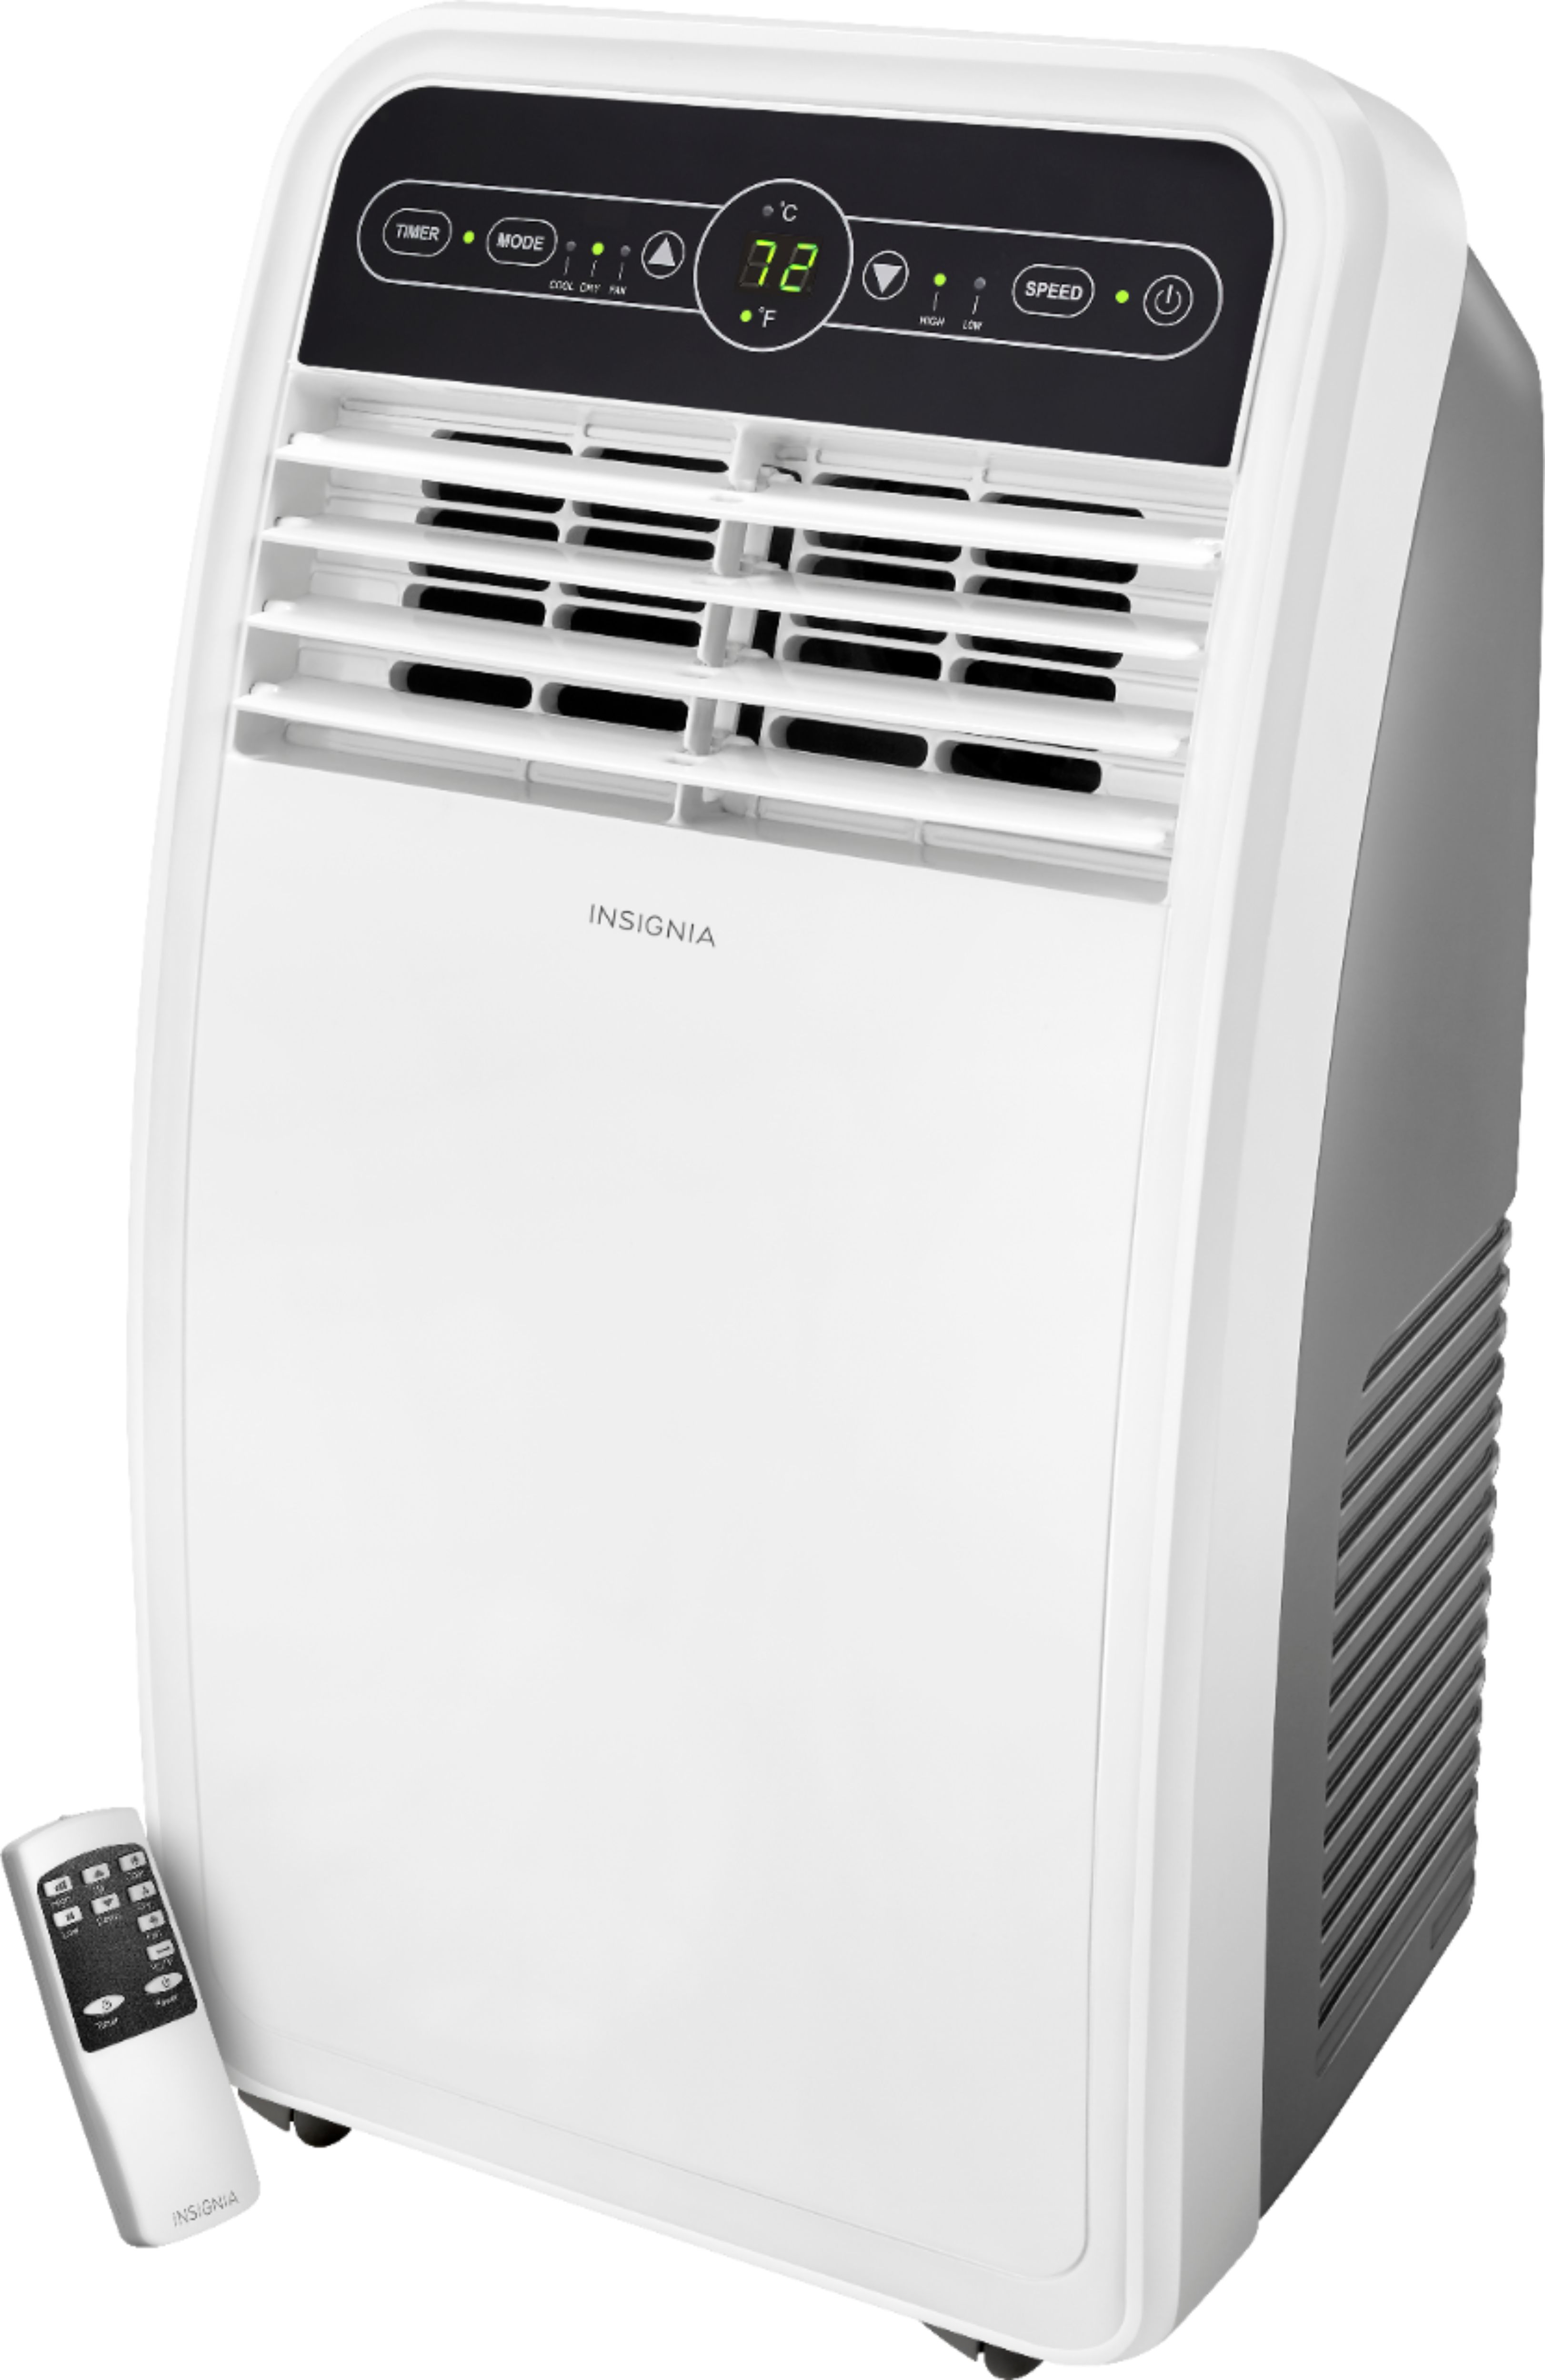 350 square feet air conditioner